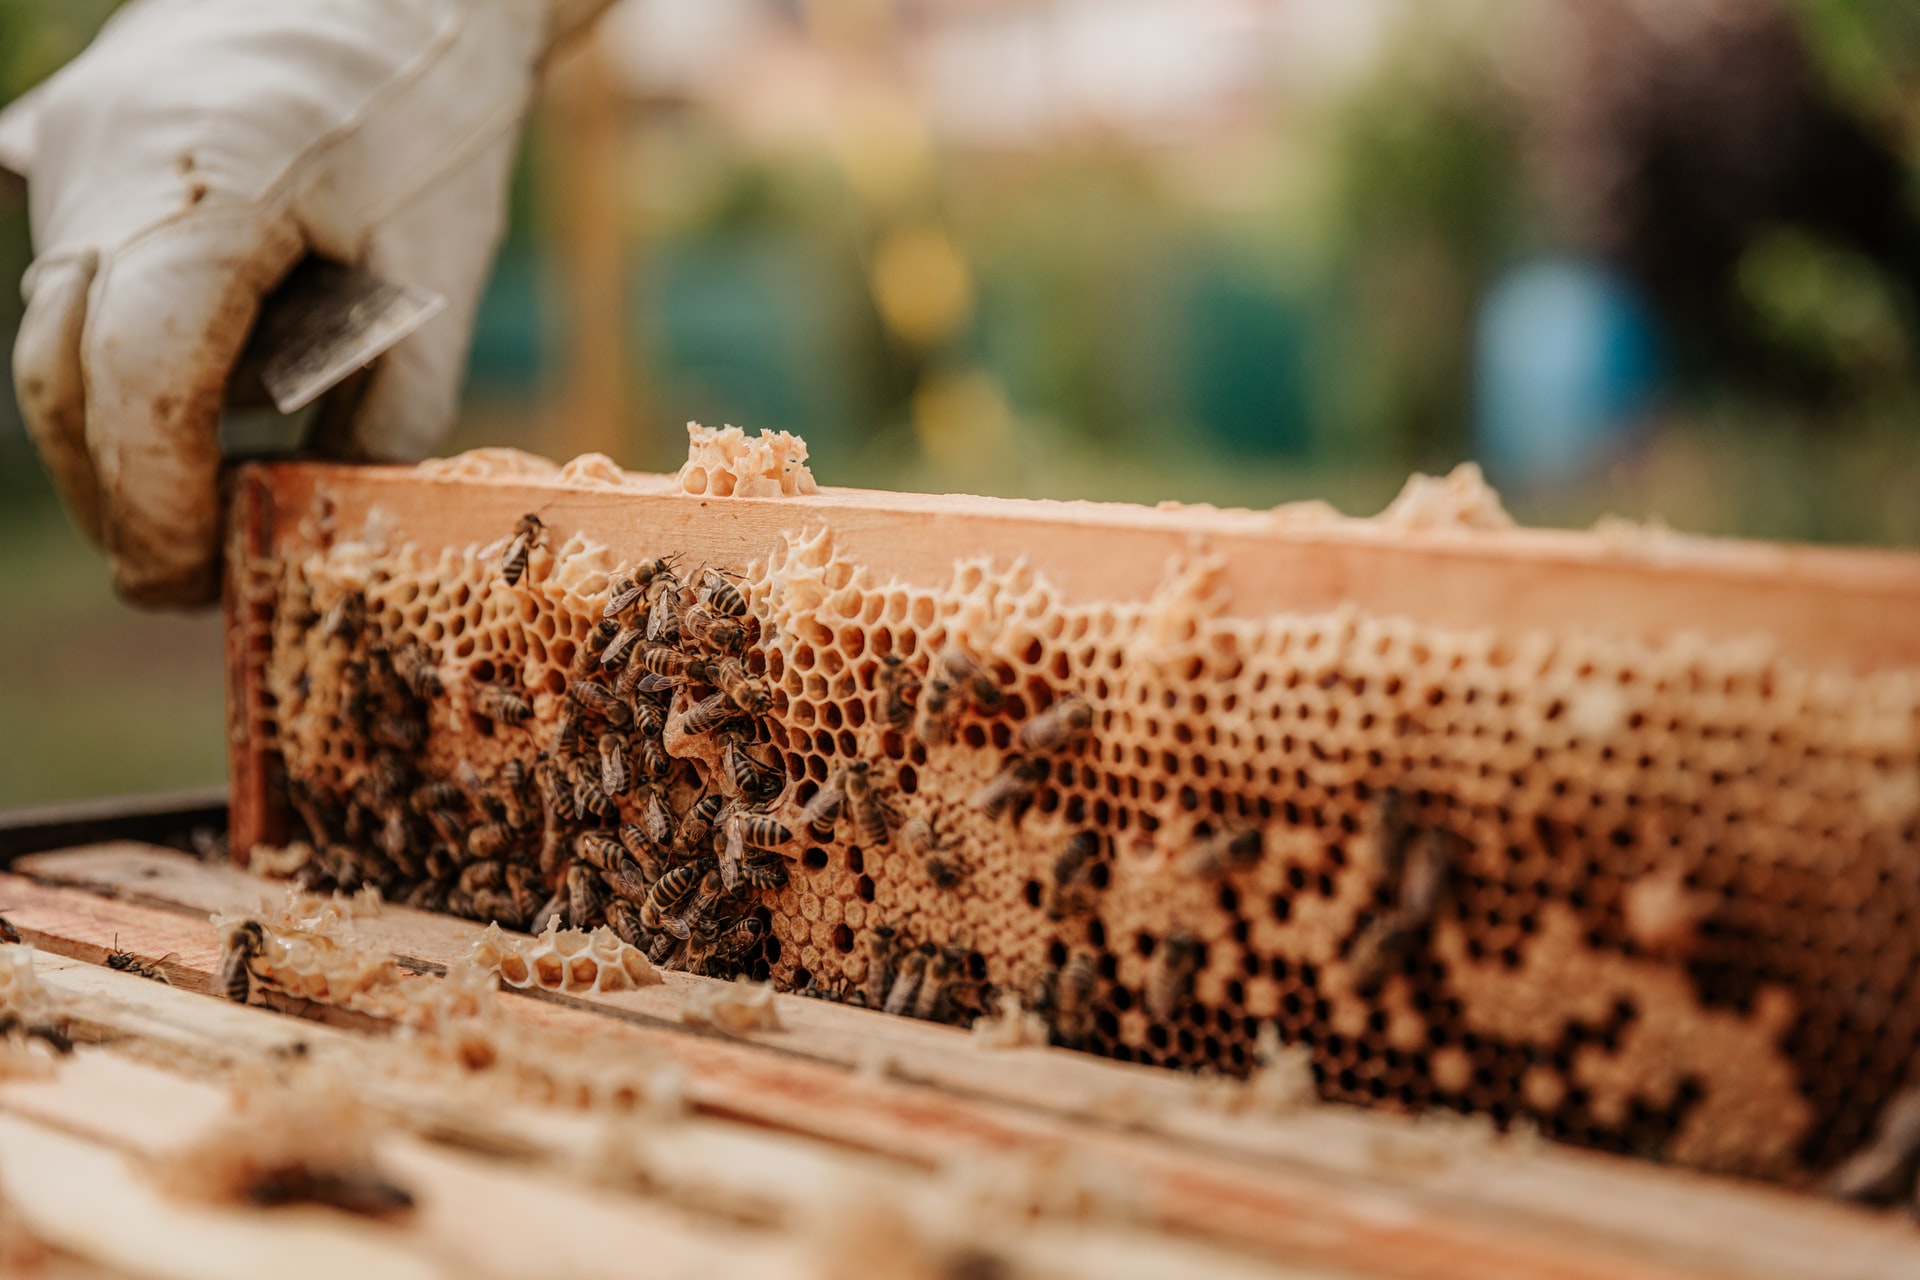 Egy horvátországi gazdaság „hotelt” kínál a méheknek